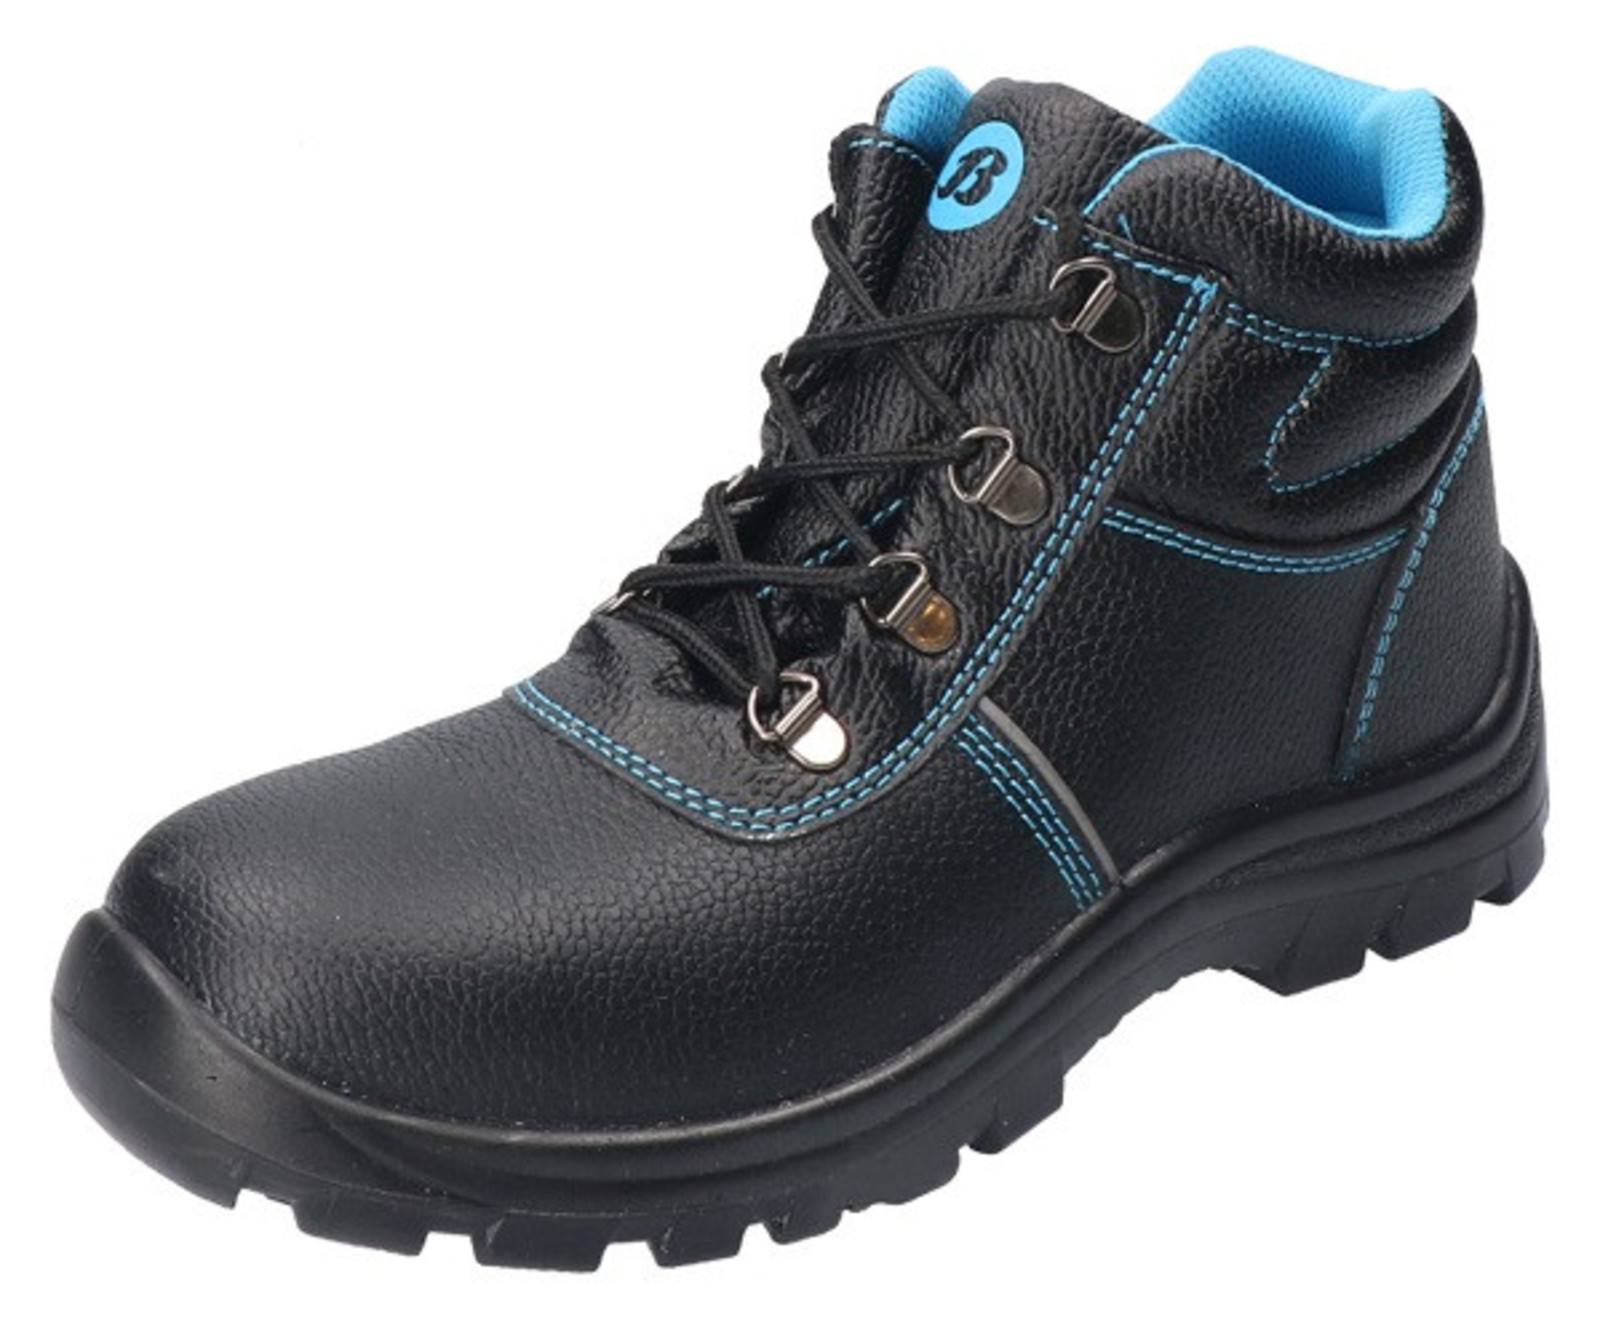 Bezpečnostná obuv Baťa Sirocco S3 - veľkosť: 35, farba: čierna